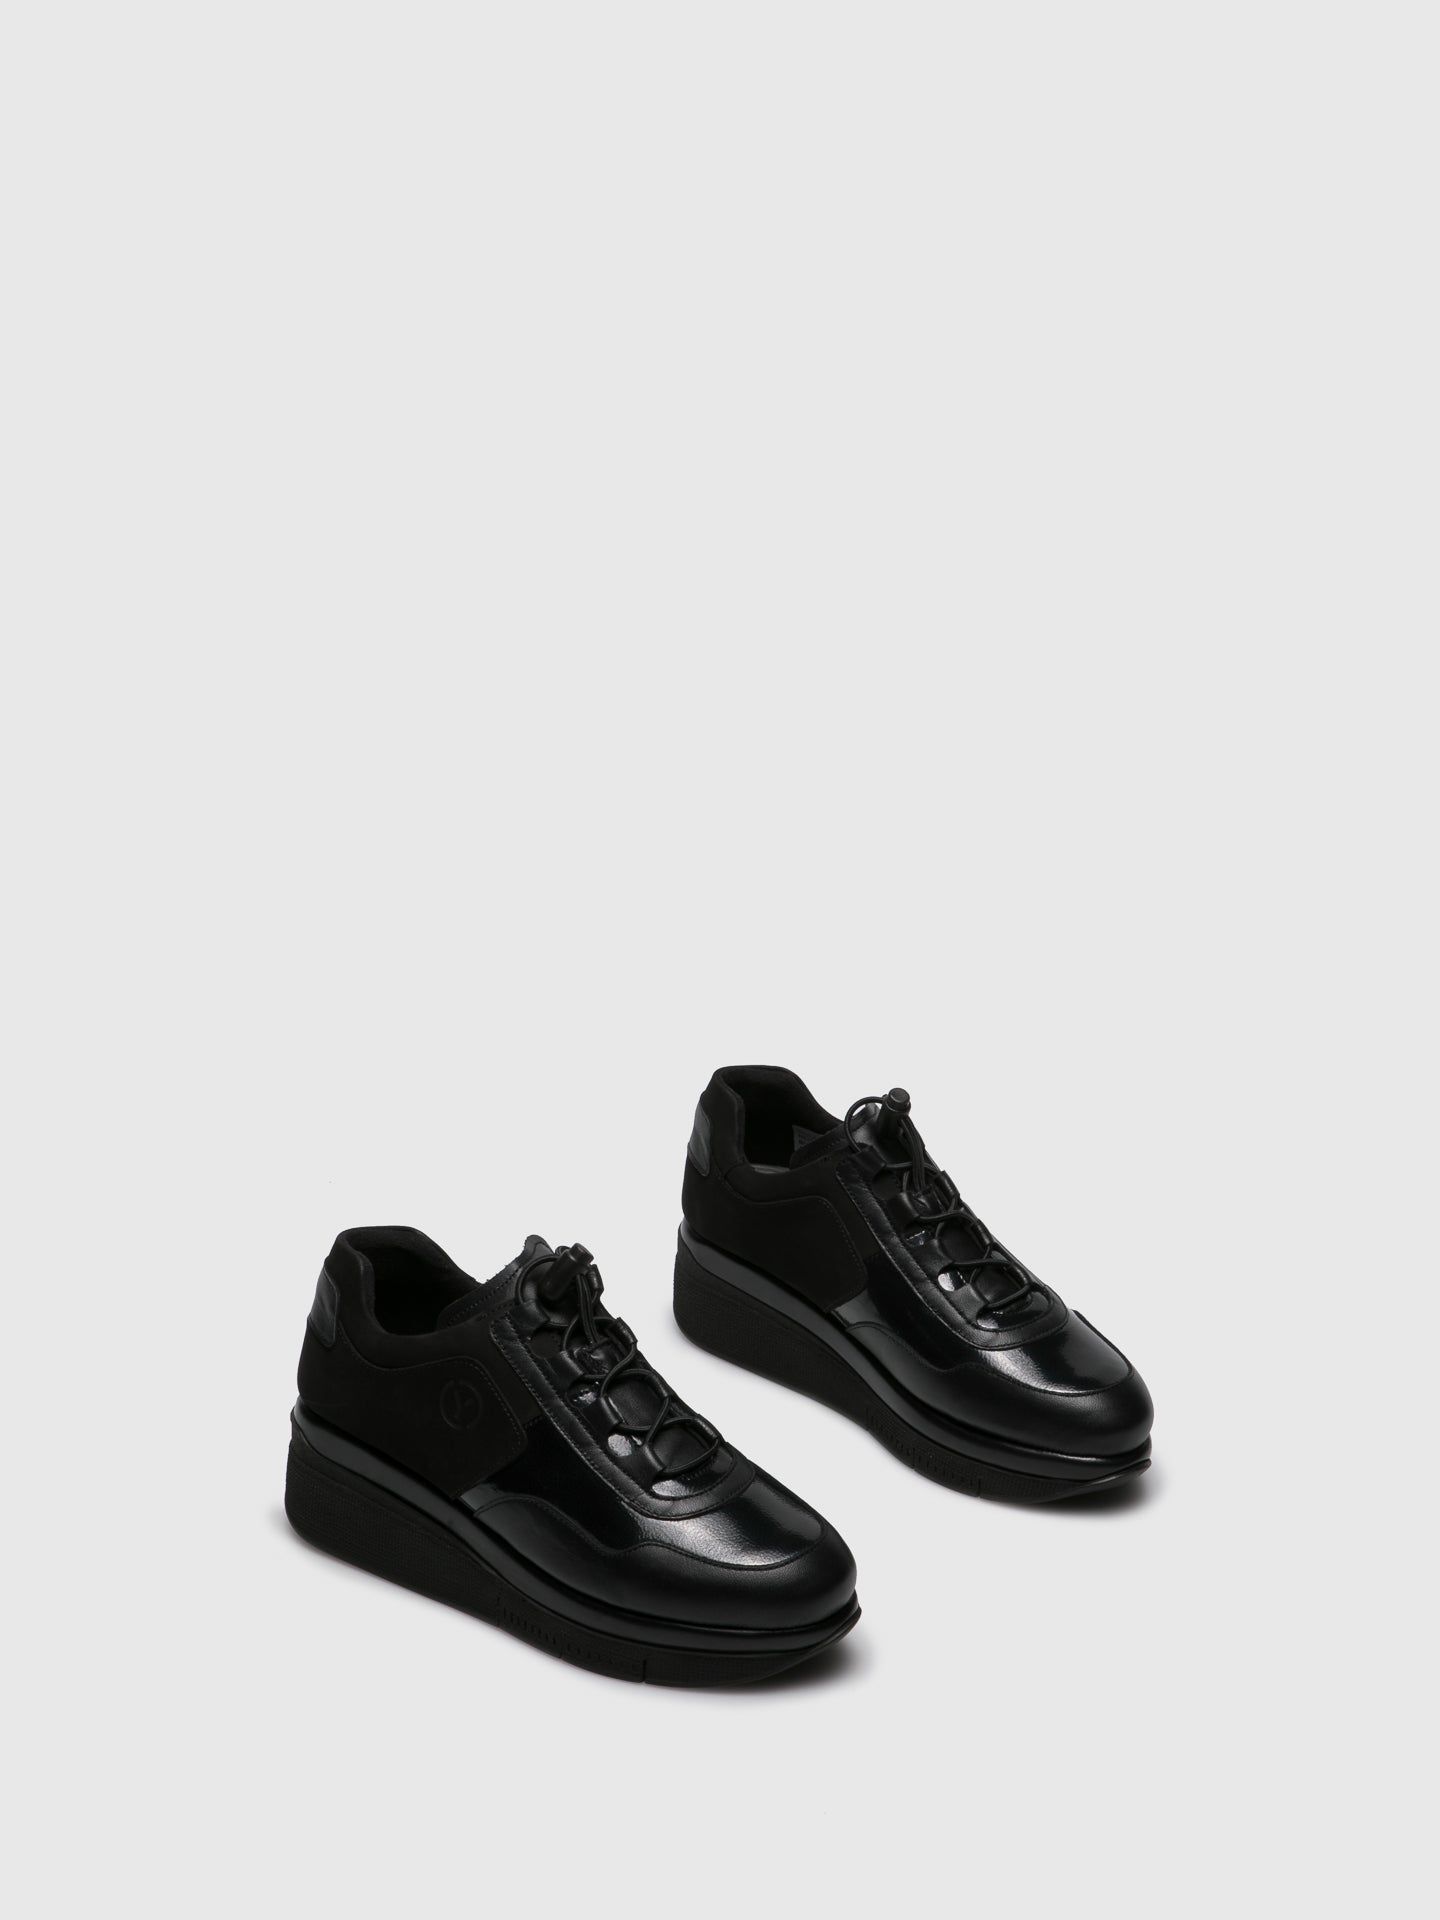 Saydo Black Wedge Shoes